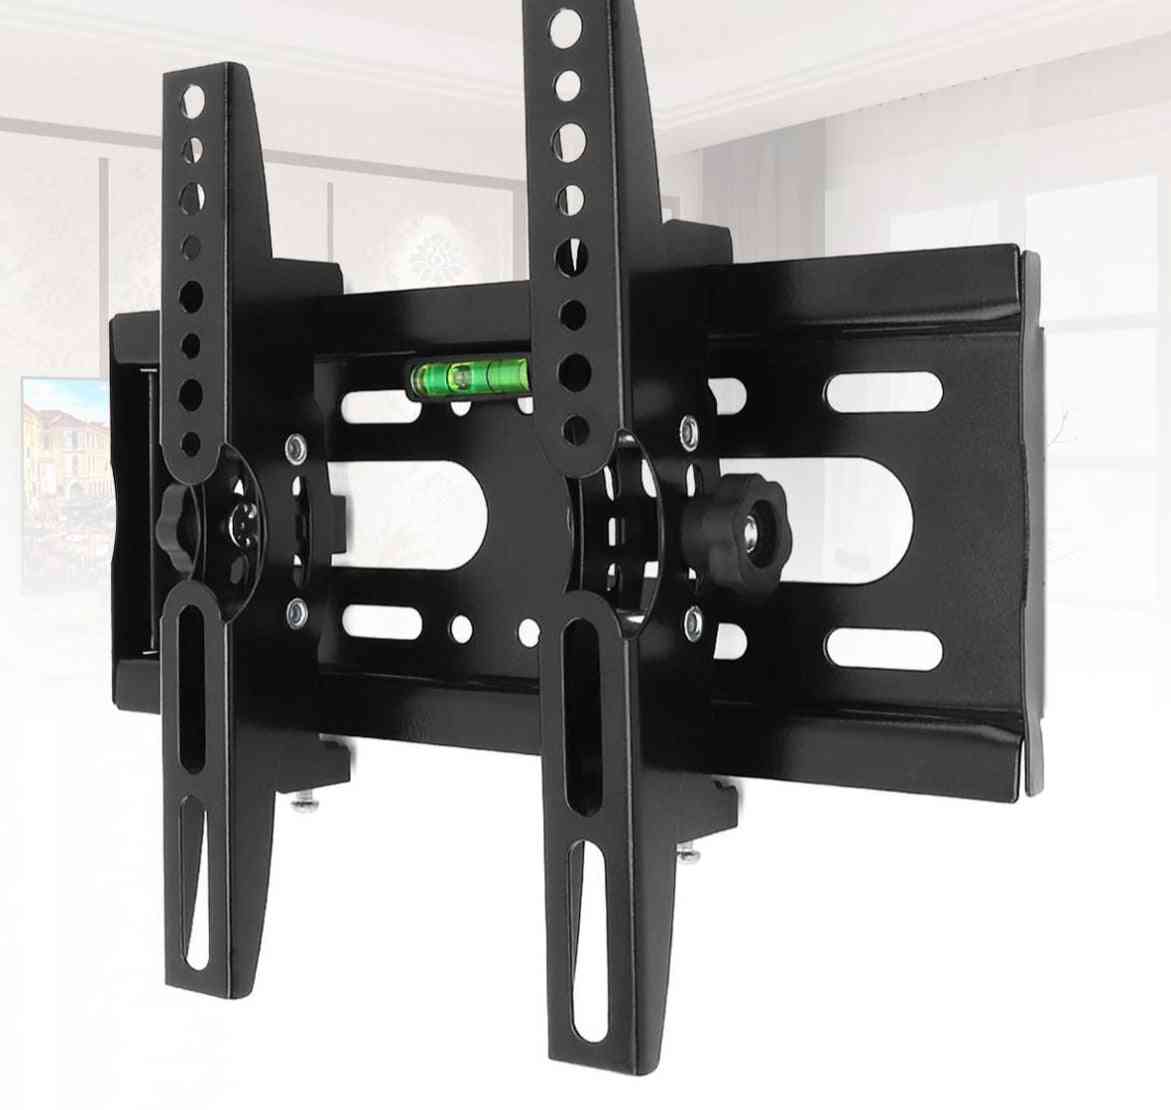 Suport universal reglabil de 25 kg pentru montare pe perete TV cu ecran plat